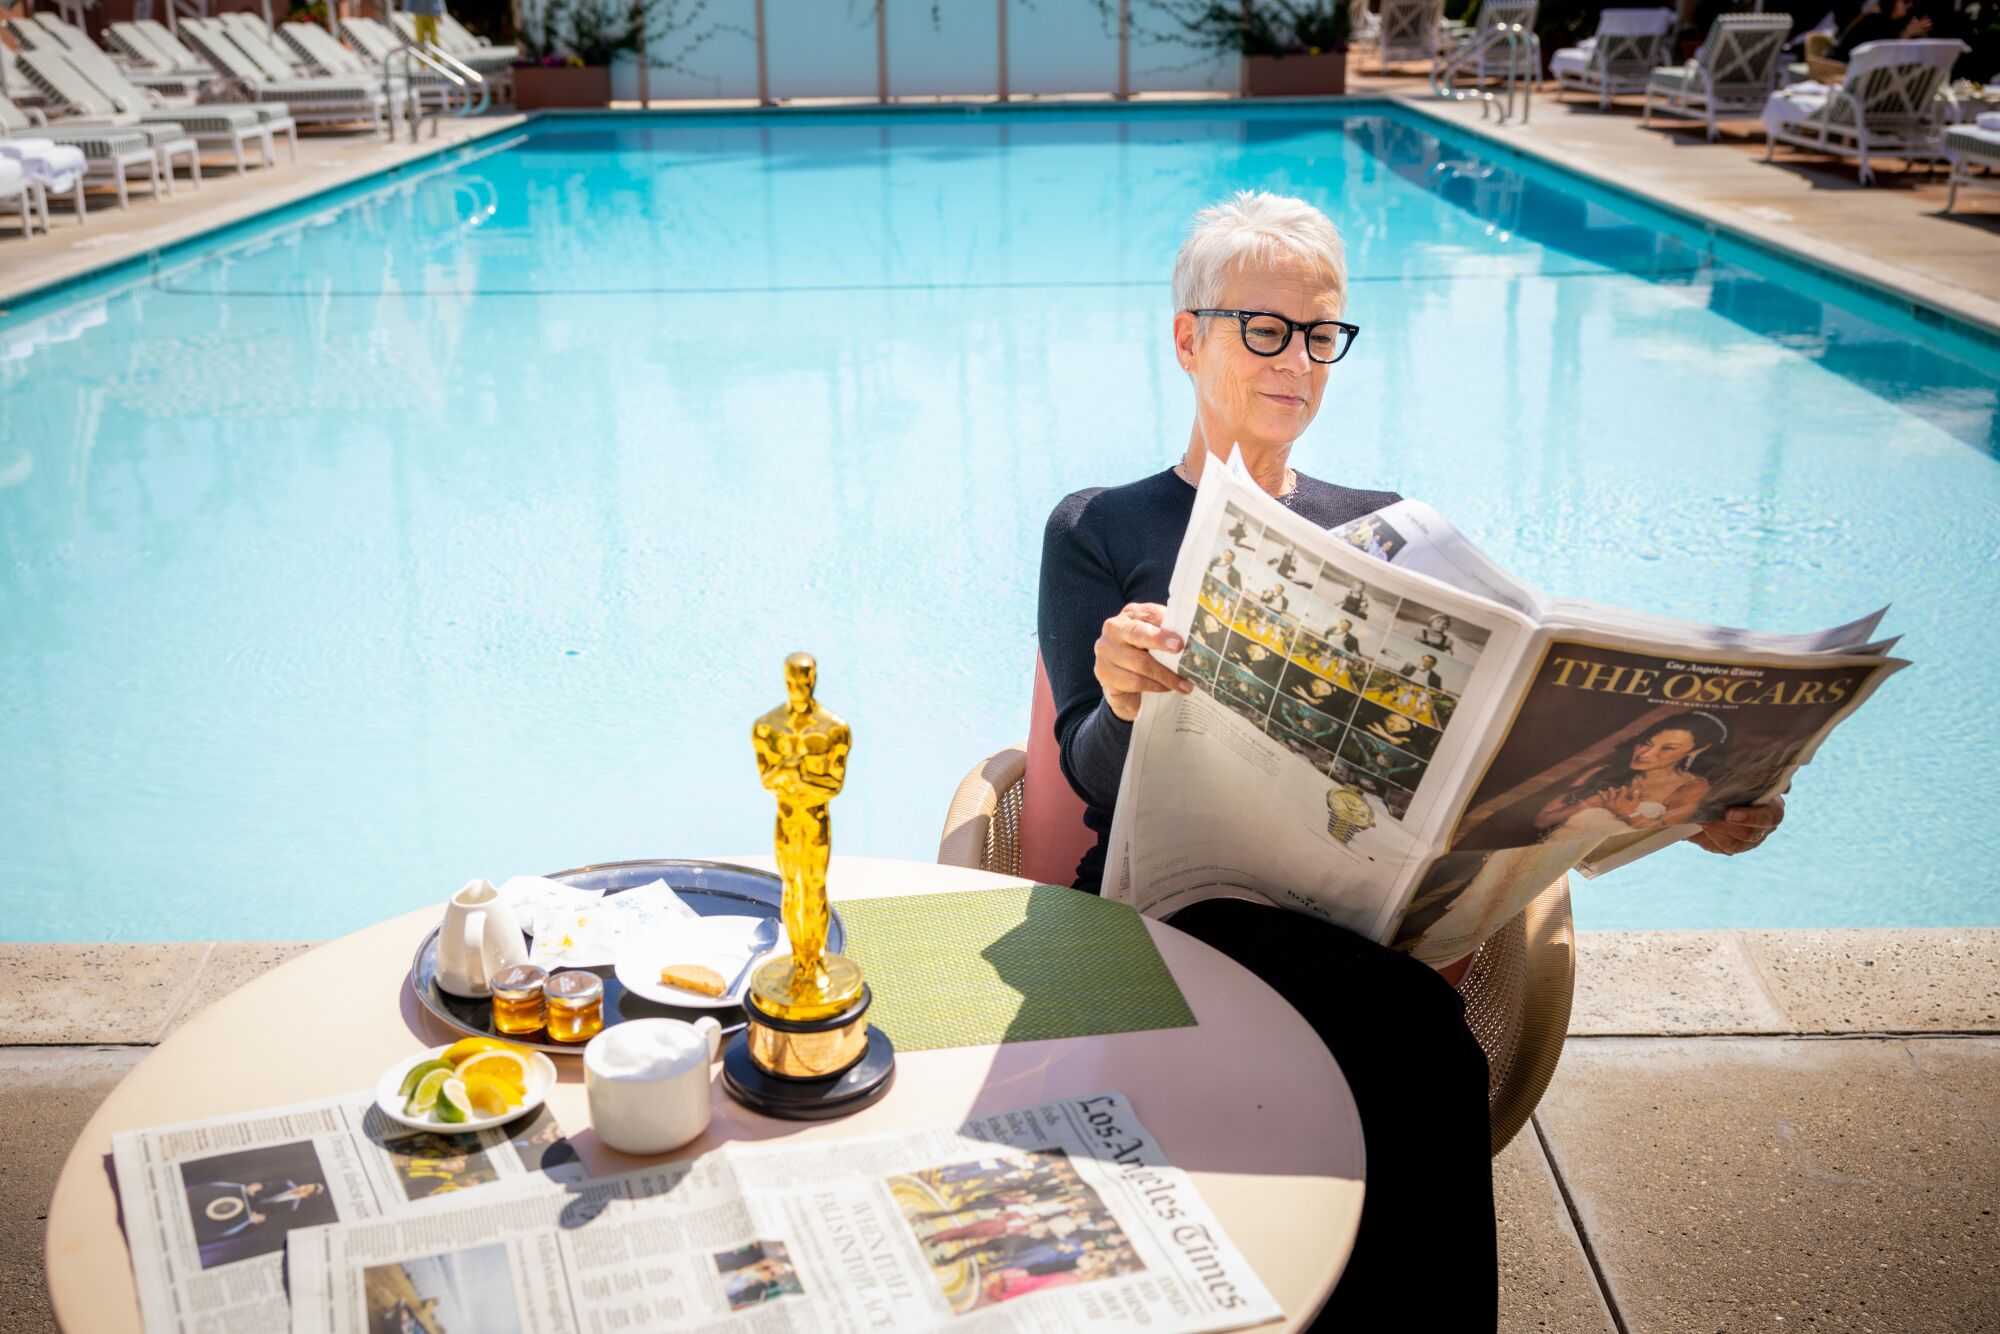 Une femme à lunettes regarde une section de journal.  Son Oscar est sur la table.